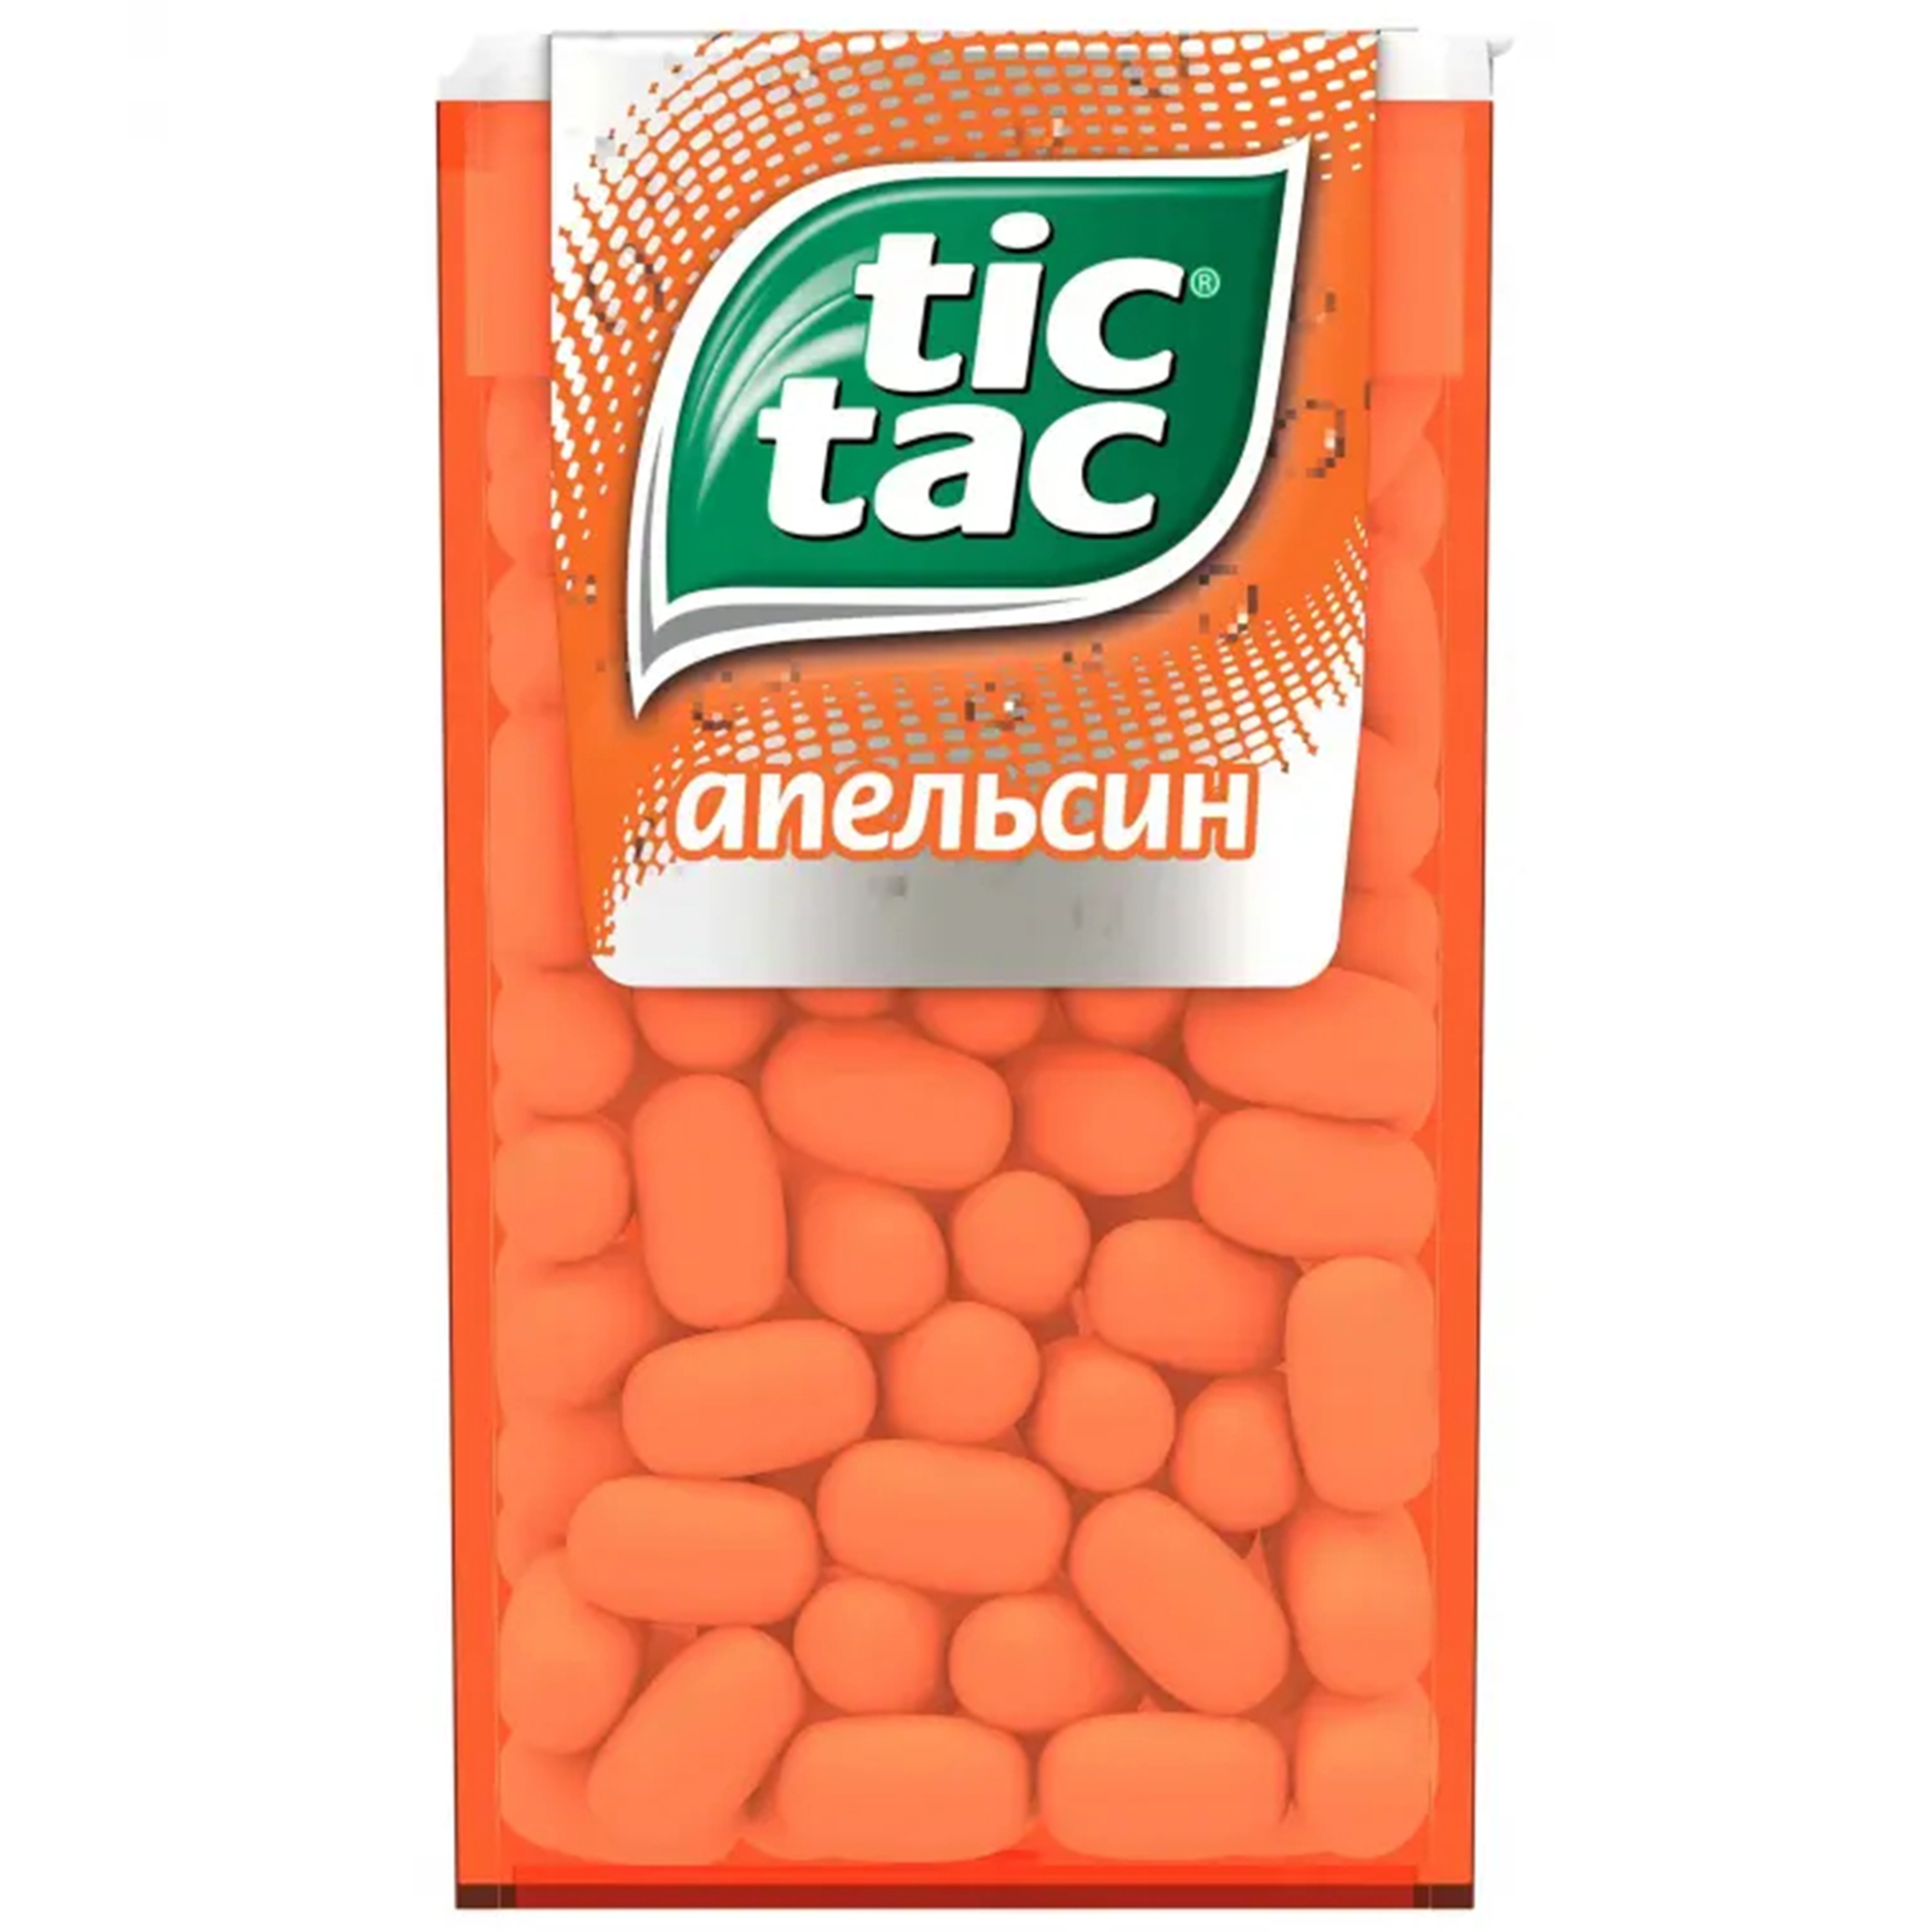 Драже Tic Tac со вкусом апельсина, 49 г драже tic tac со вкусом апельсина 49 г